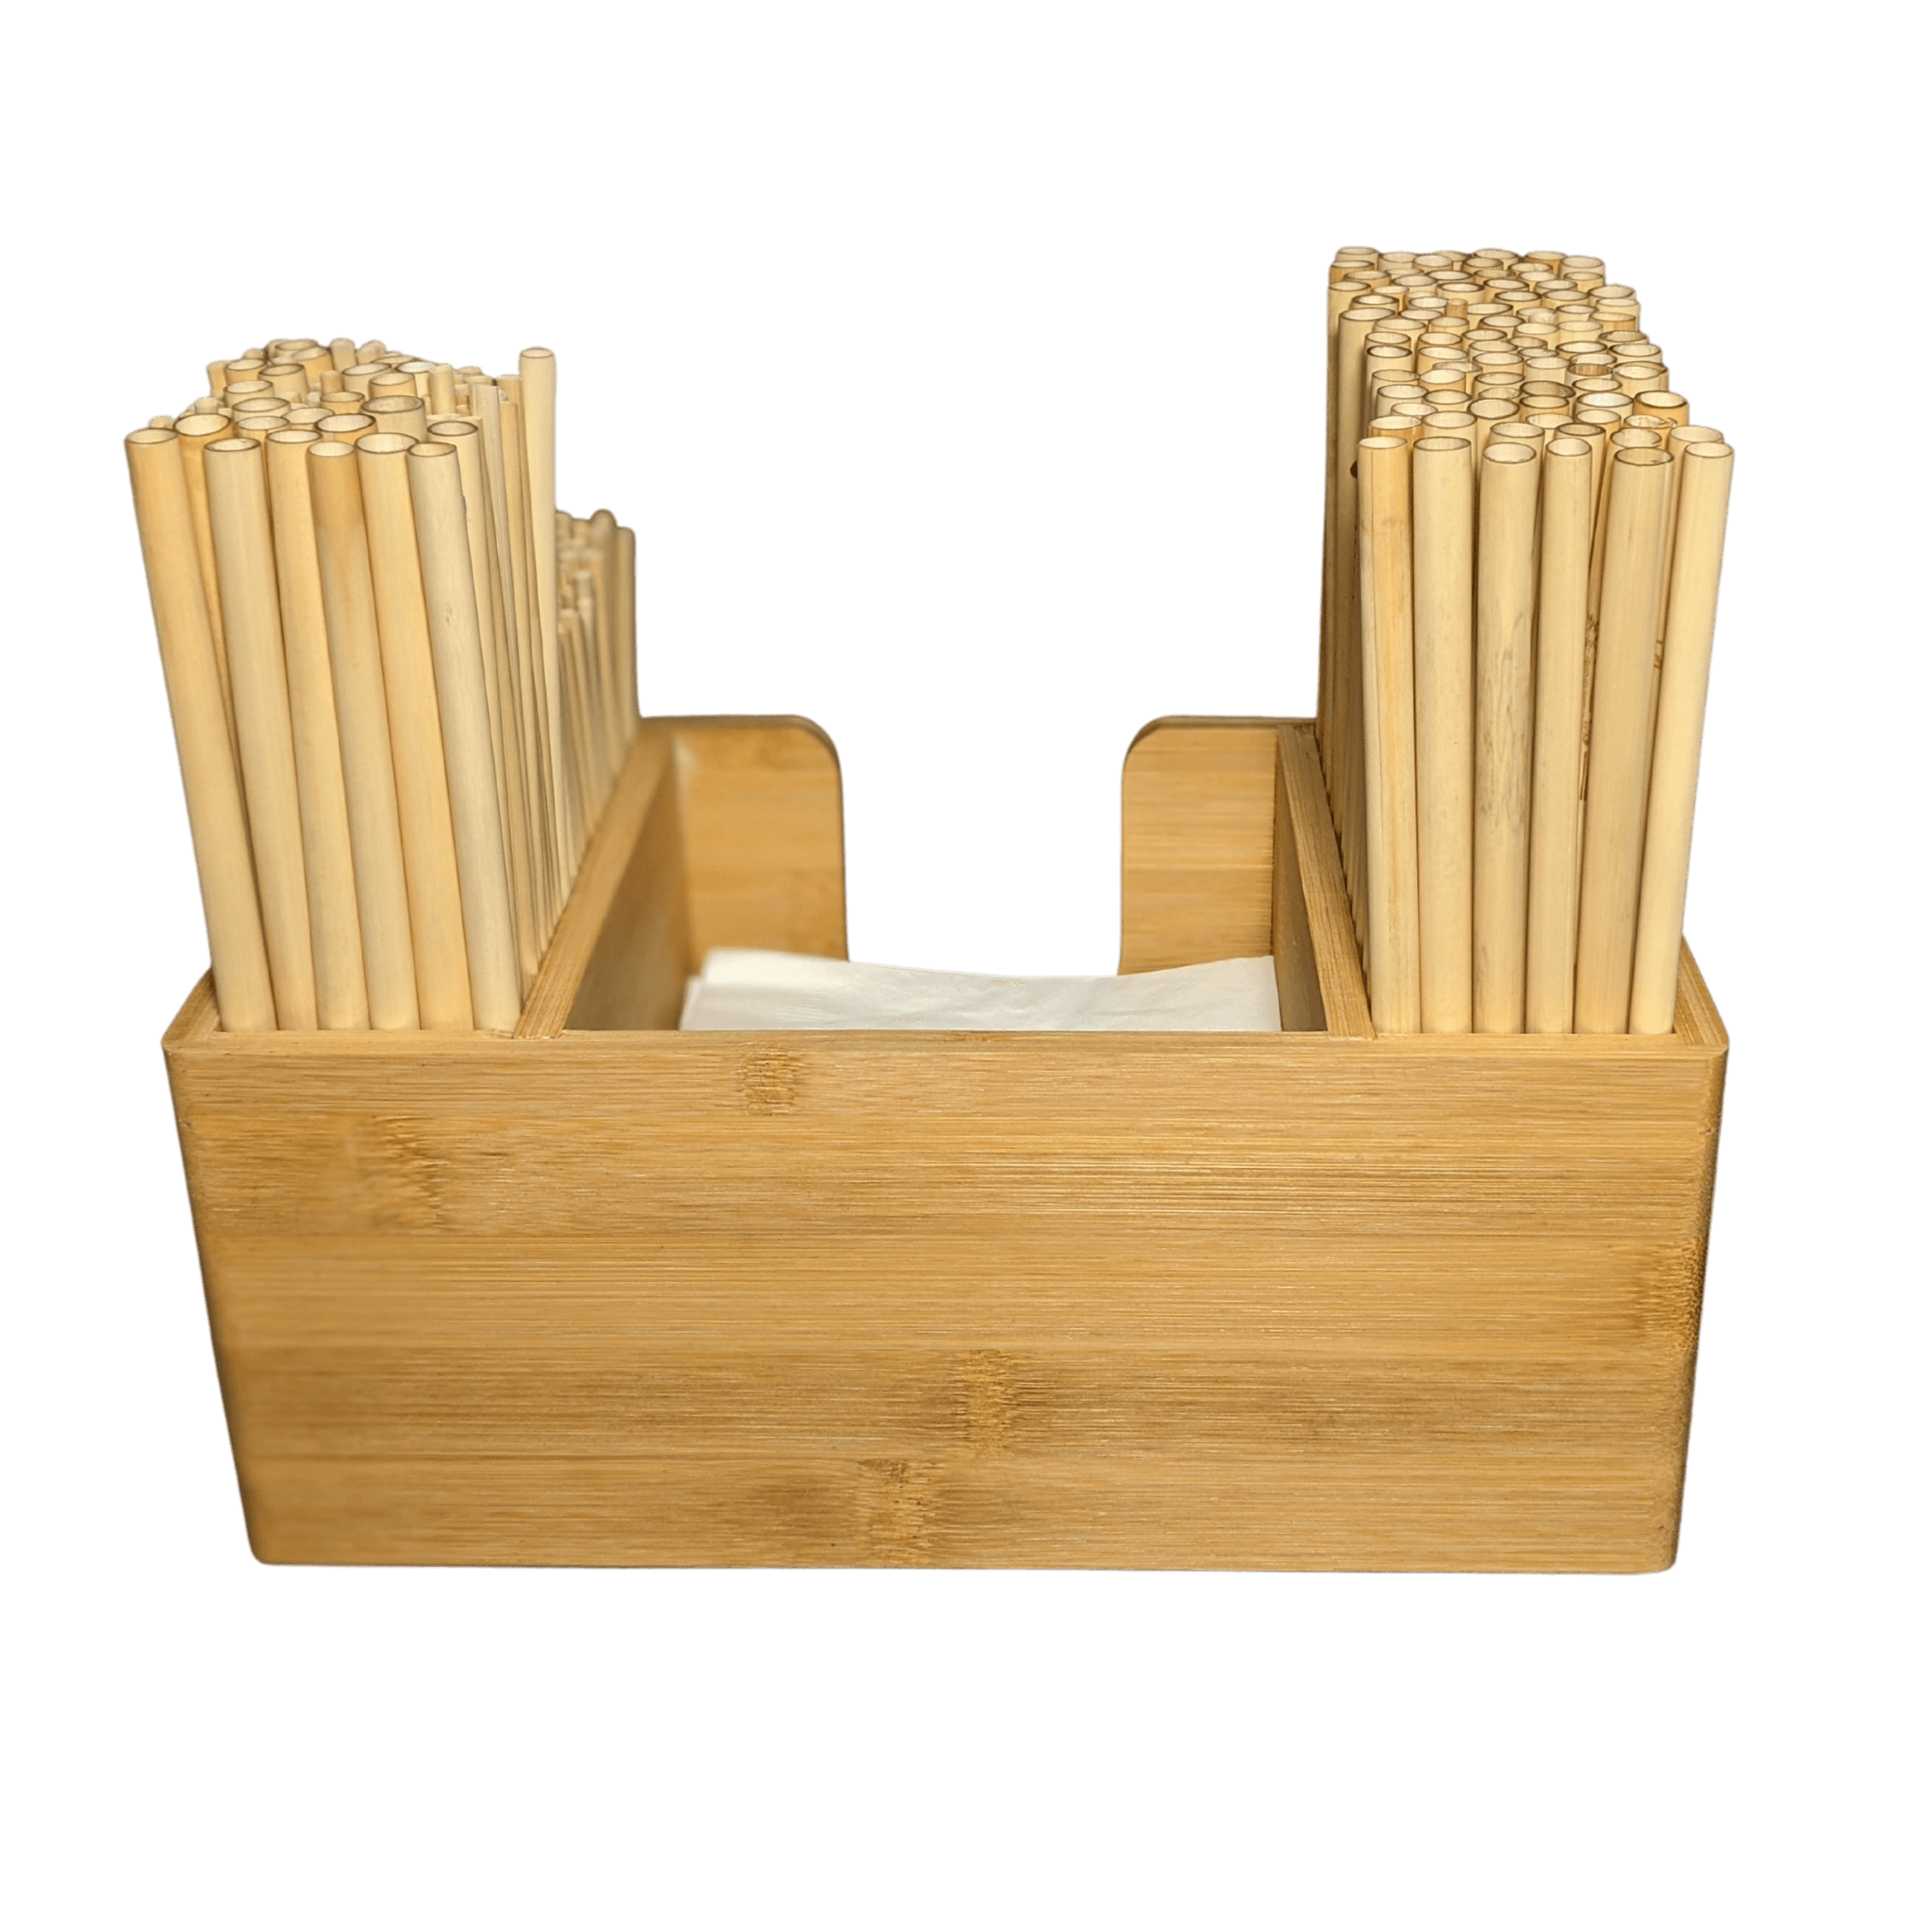 Bamboo Straw and Napkin Bar Caddy